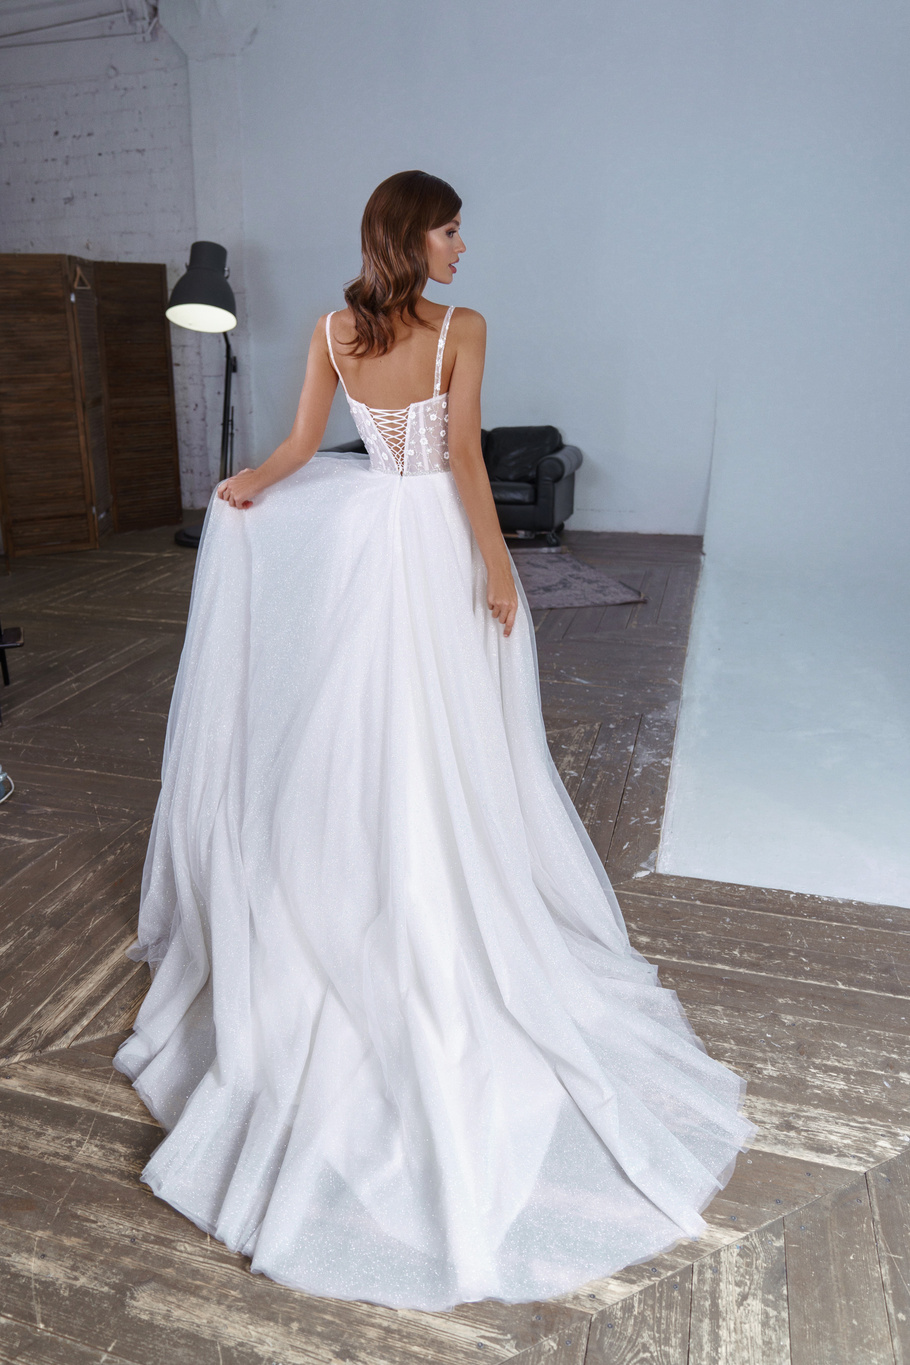 Купить свадебное платье «Флавия» Патрисия из коллекции 2020 года в Казани